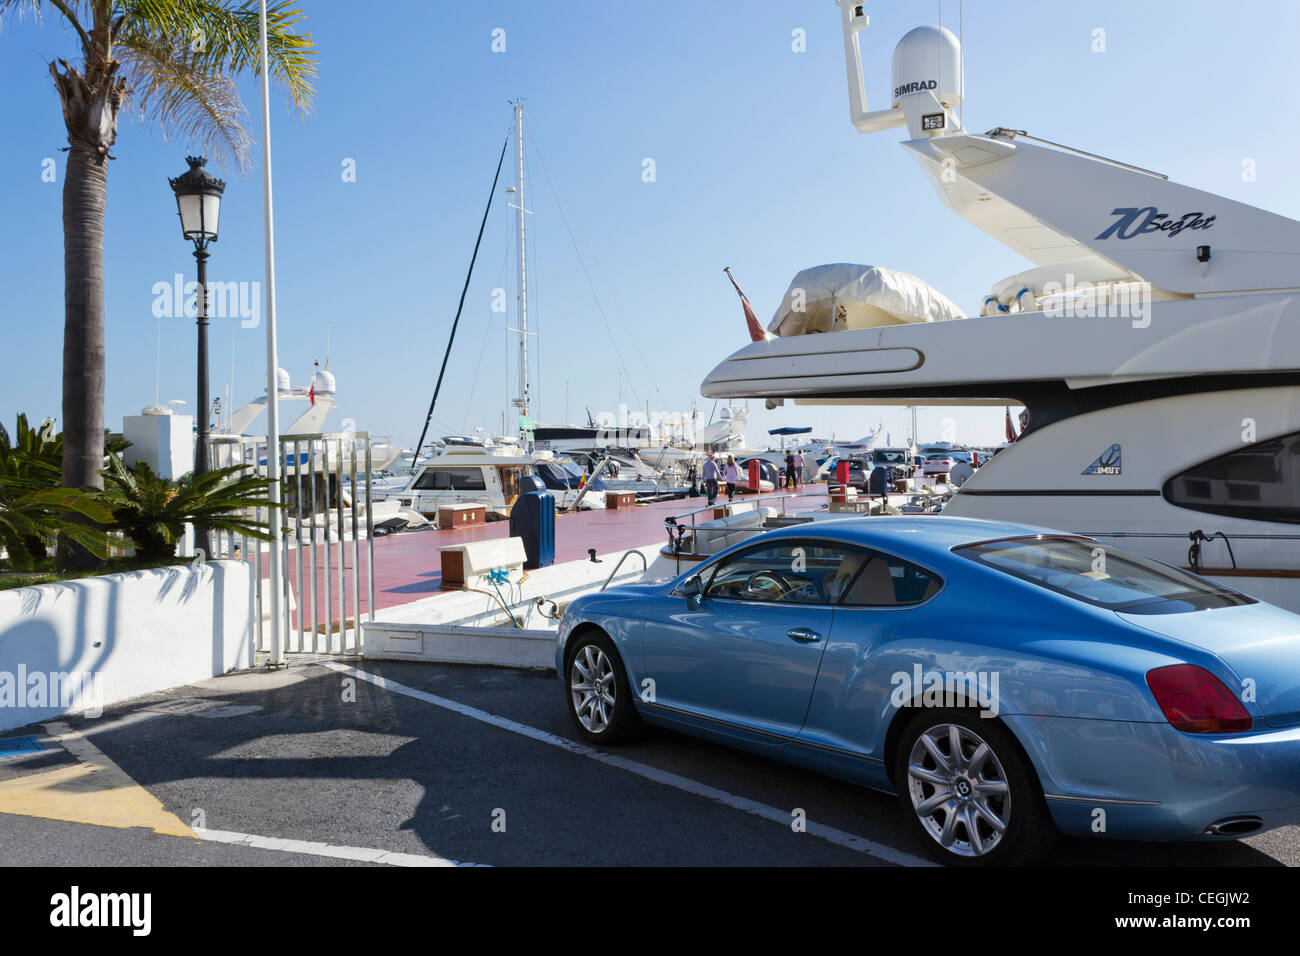 Azul pálido Bentley coche aparcado en El Puerto José Banús, Marbella, Costa del Sol, Andalucía, España. Foto de stock